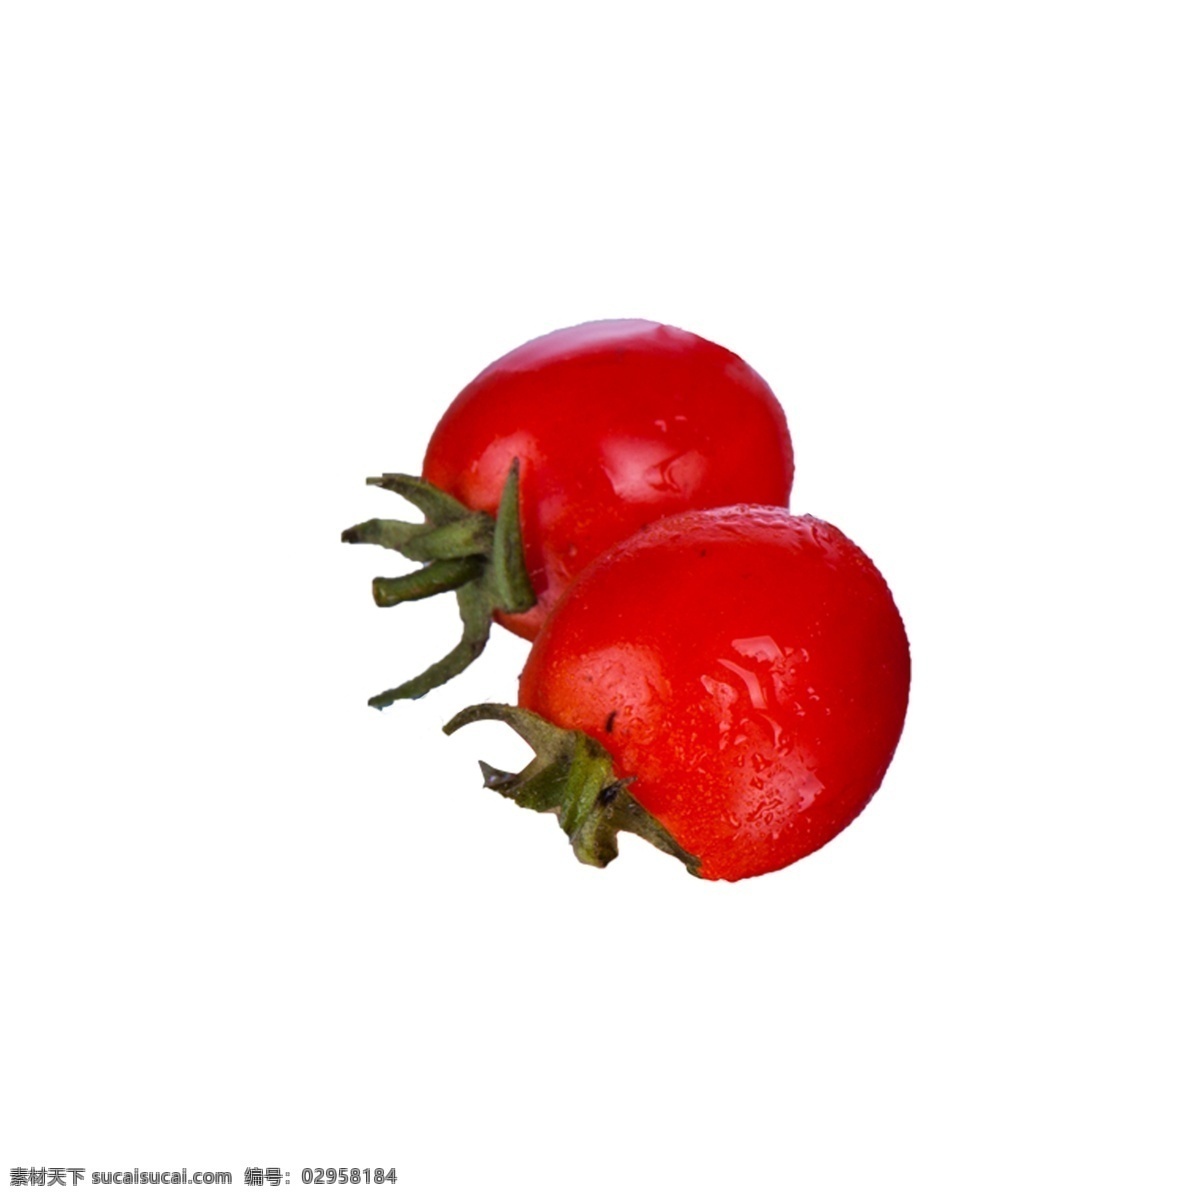 小 番茄 免 抠 小番茄 蔬菜 新鲜 红色 植物 实物拍摄 摆拍 绿色叶子 酸甜 小番茄免抠 营养